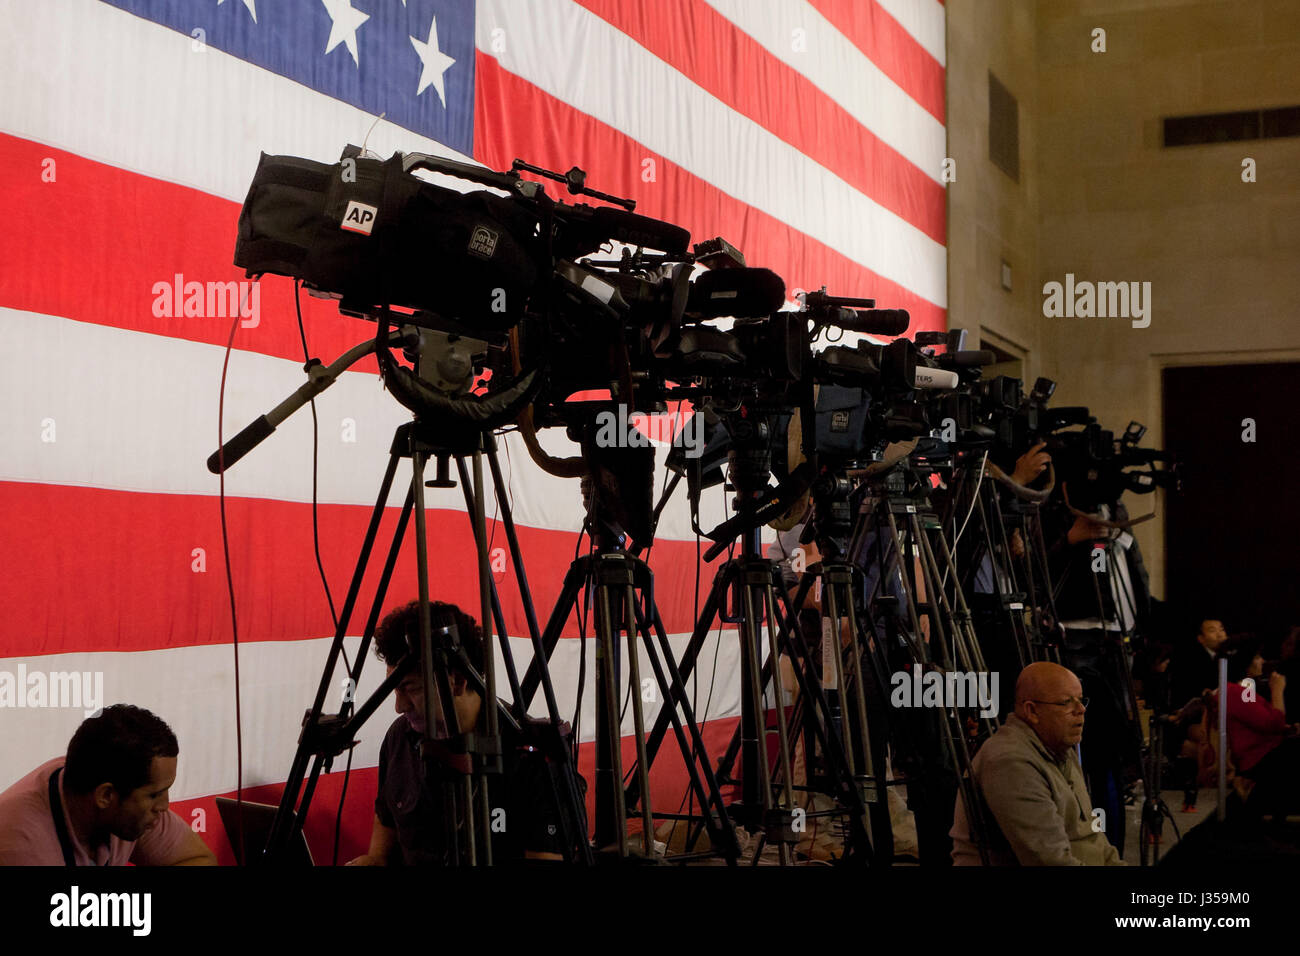 Notizie macchine fotografiche impostare durante l evento stampa - USA Foto Stock